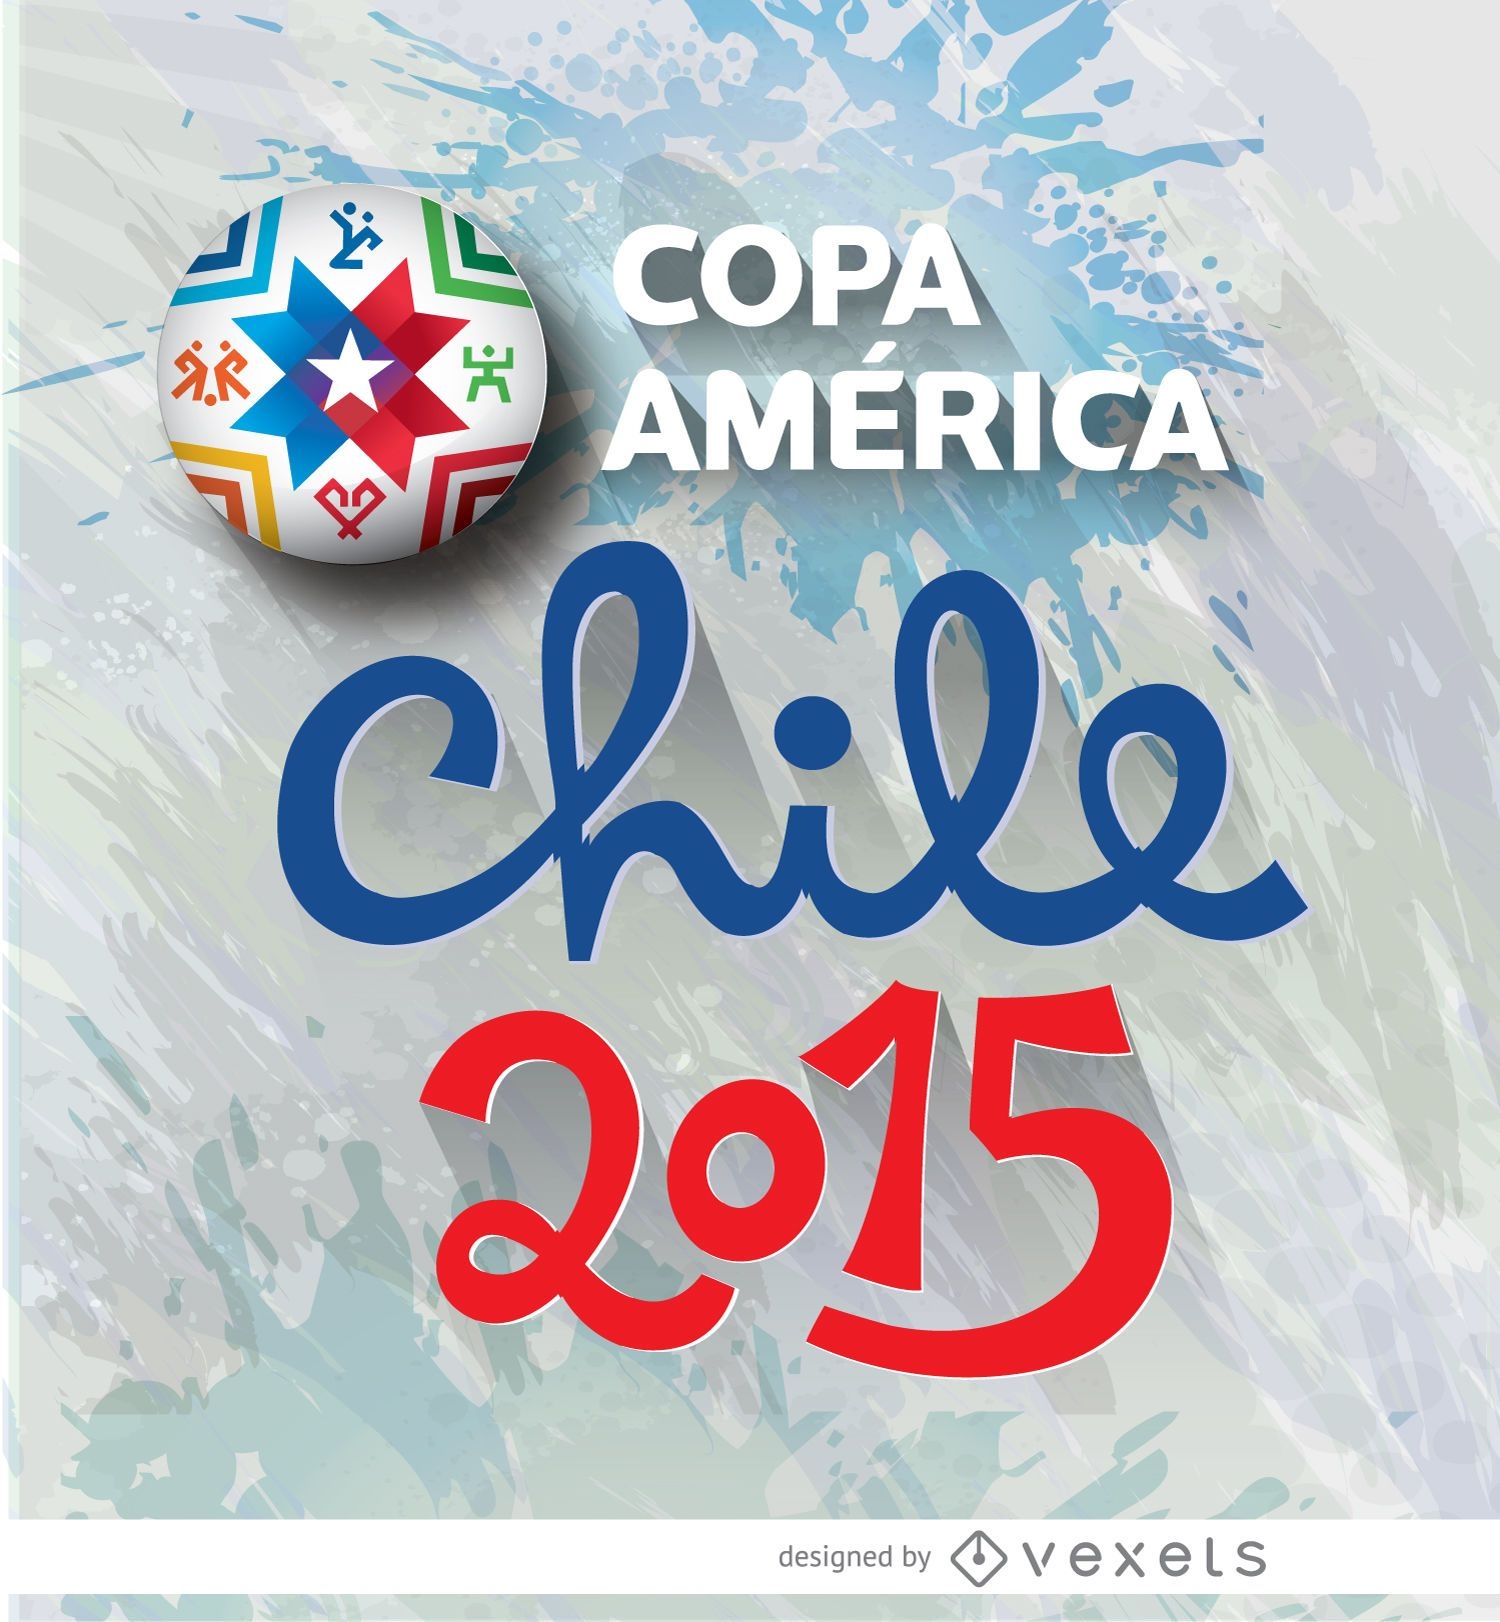 Copa America Chile logo